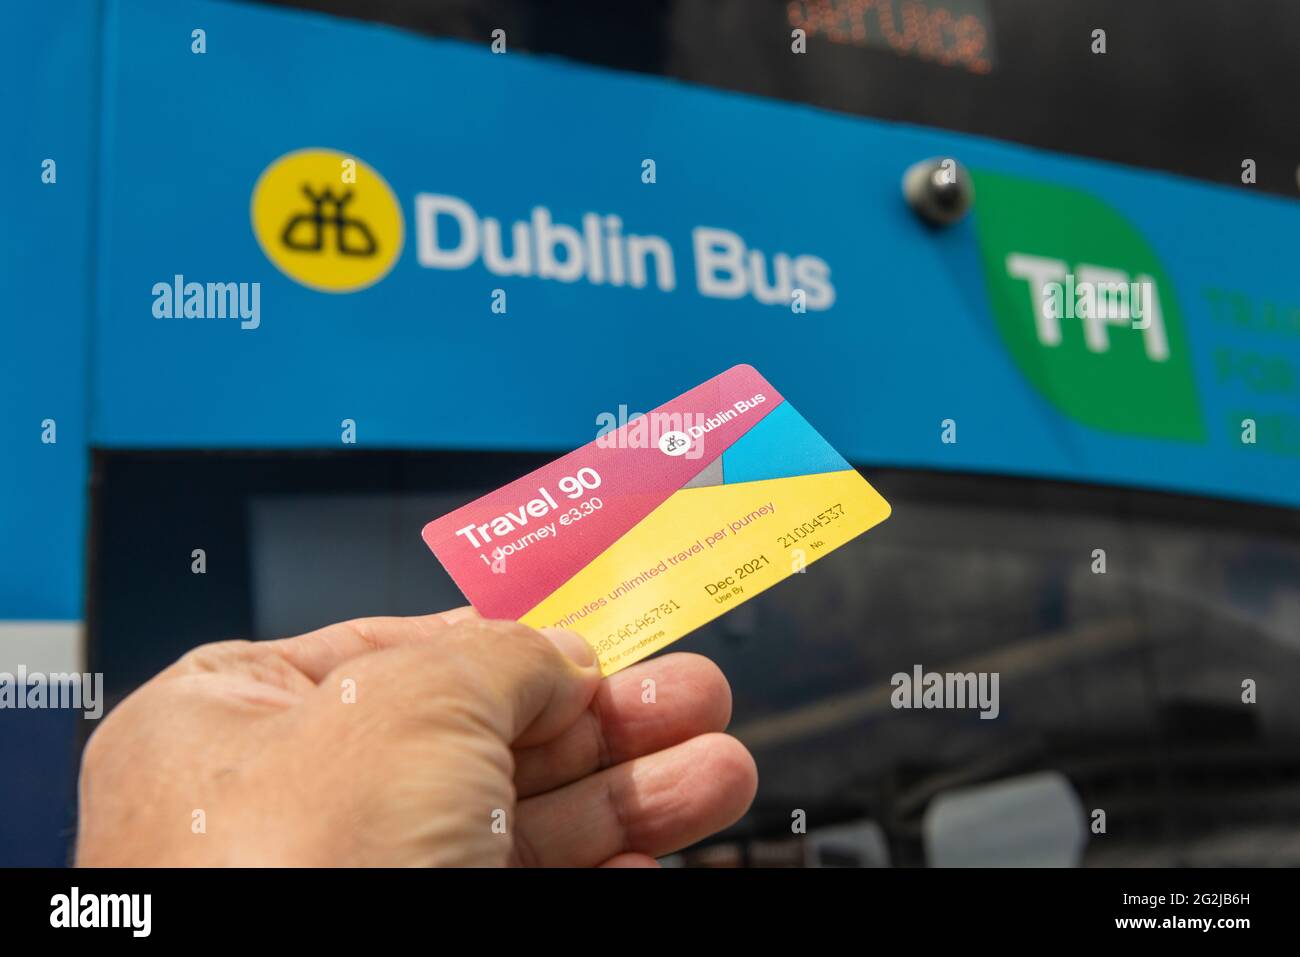 Öffentliche Verkehrsmittel Irland. Hand mit einem von Dublin Bus in Dublin, Irland, ausgestellten Bus-Ticket der Travel 90. Reisekonzept. Stockfoto